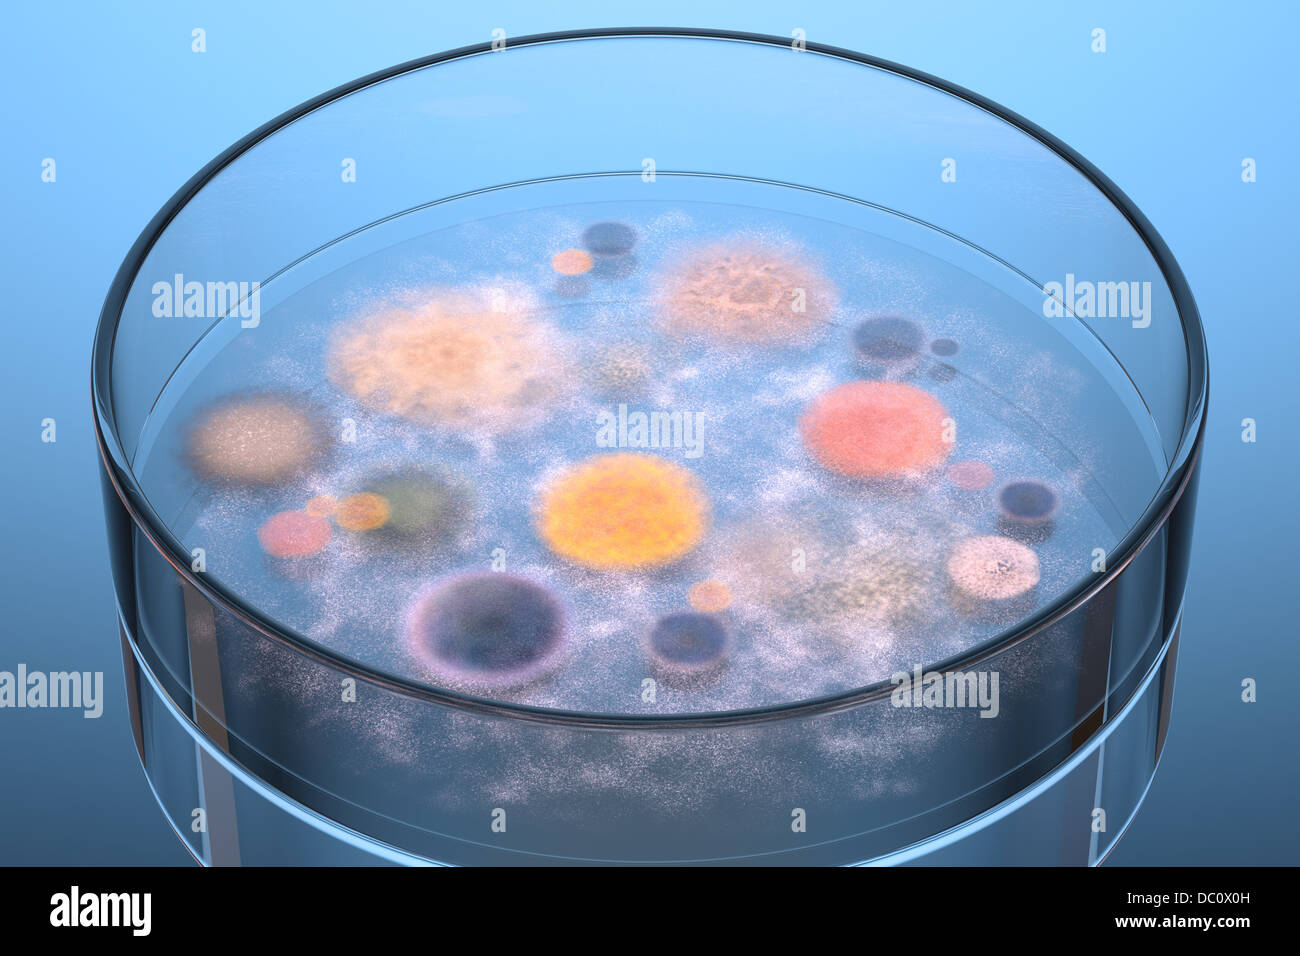 Les bactéries et champignons qui grandissent dans une boîte de Petri. Banque D'Images